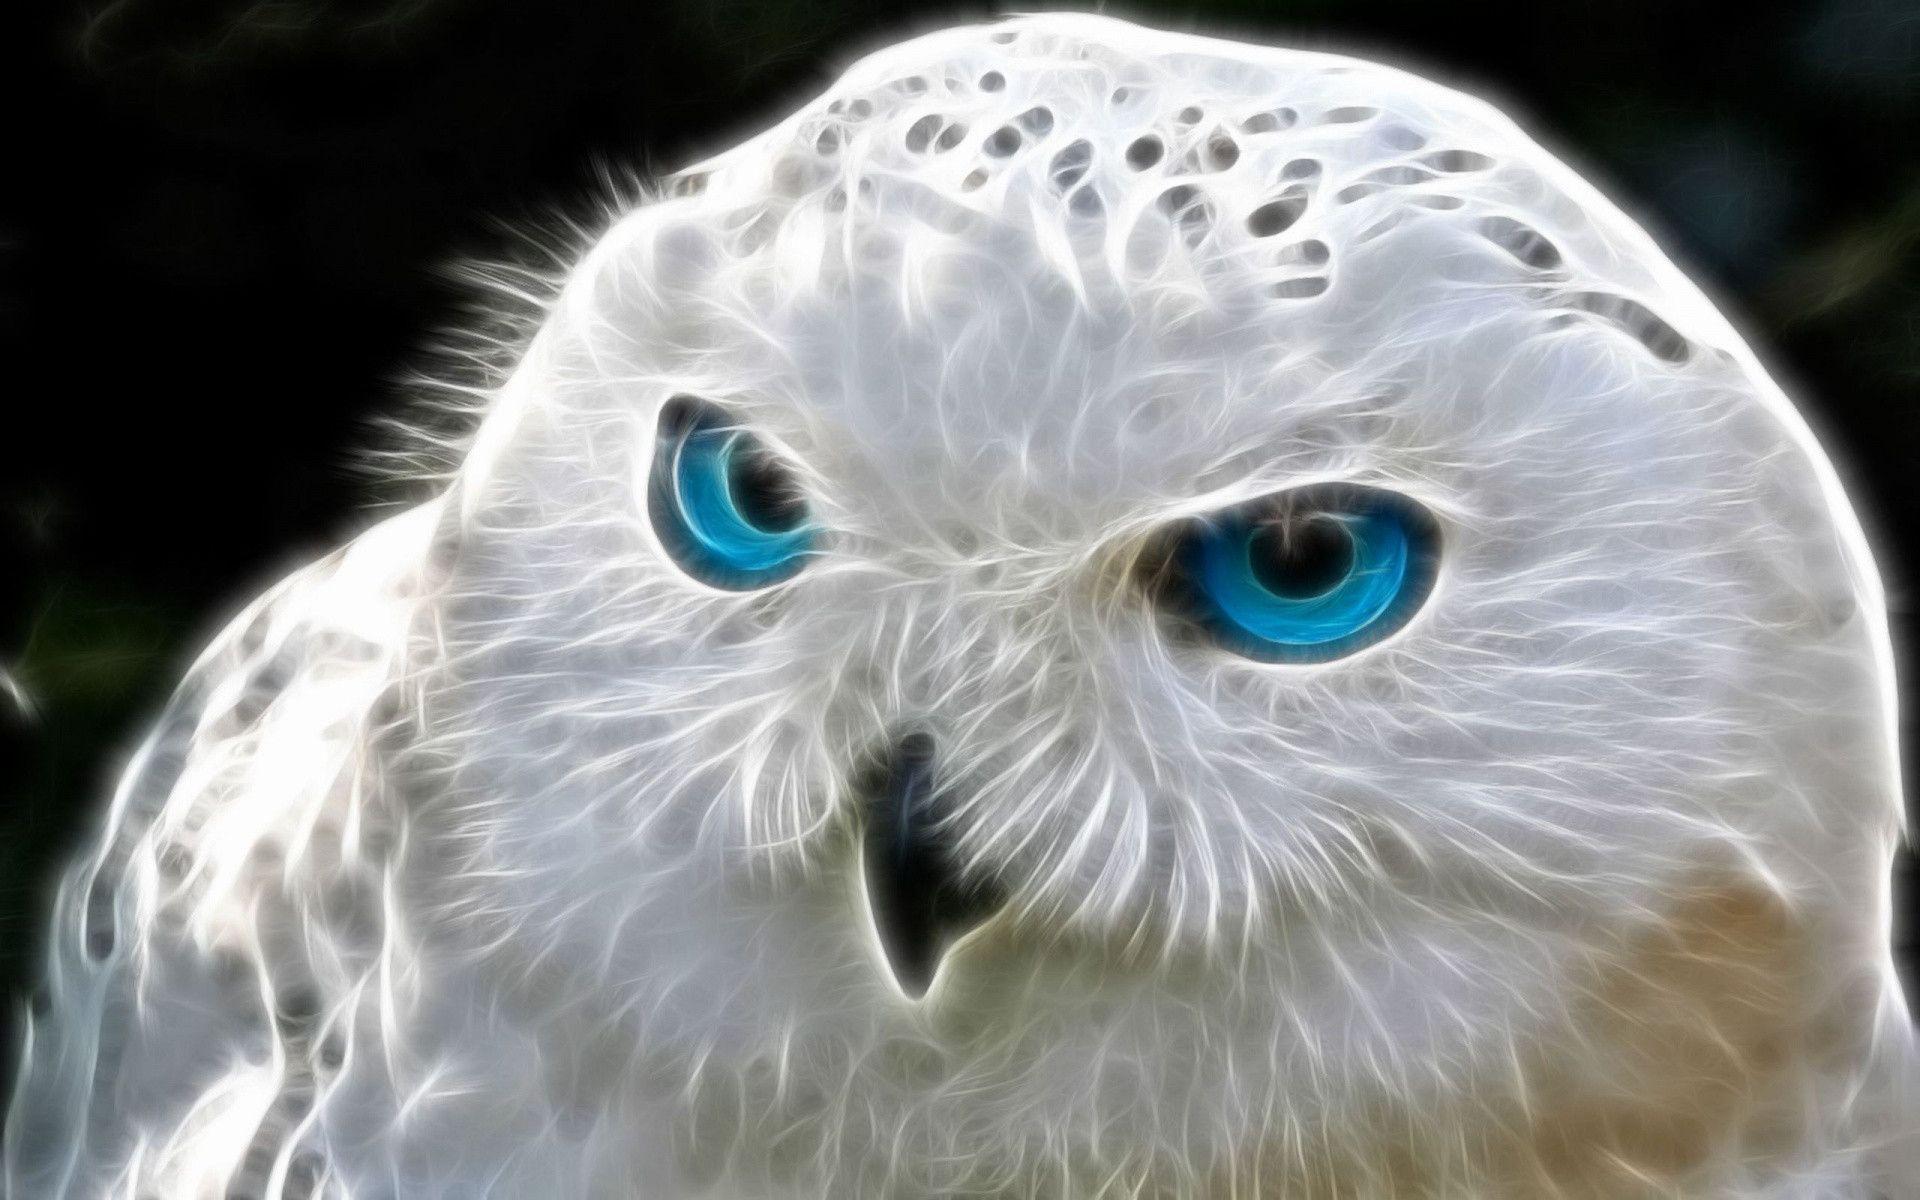 Stunning White Owl Wallpaper 1920x1200PX Interesting Owl